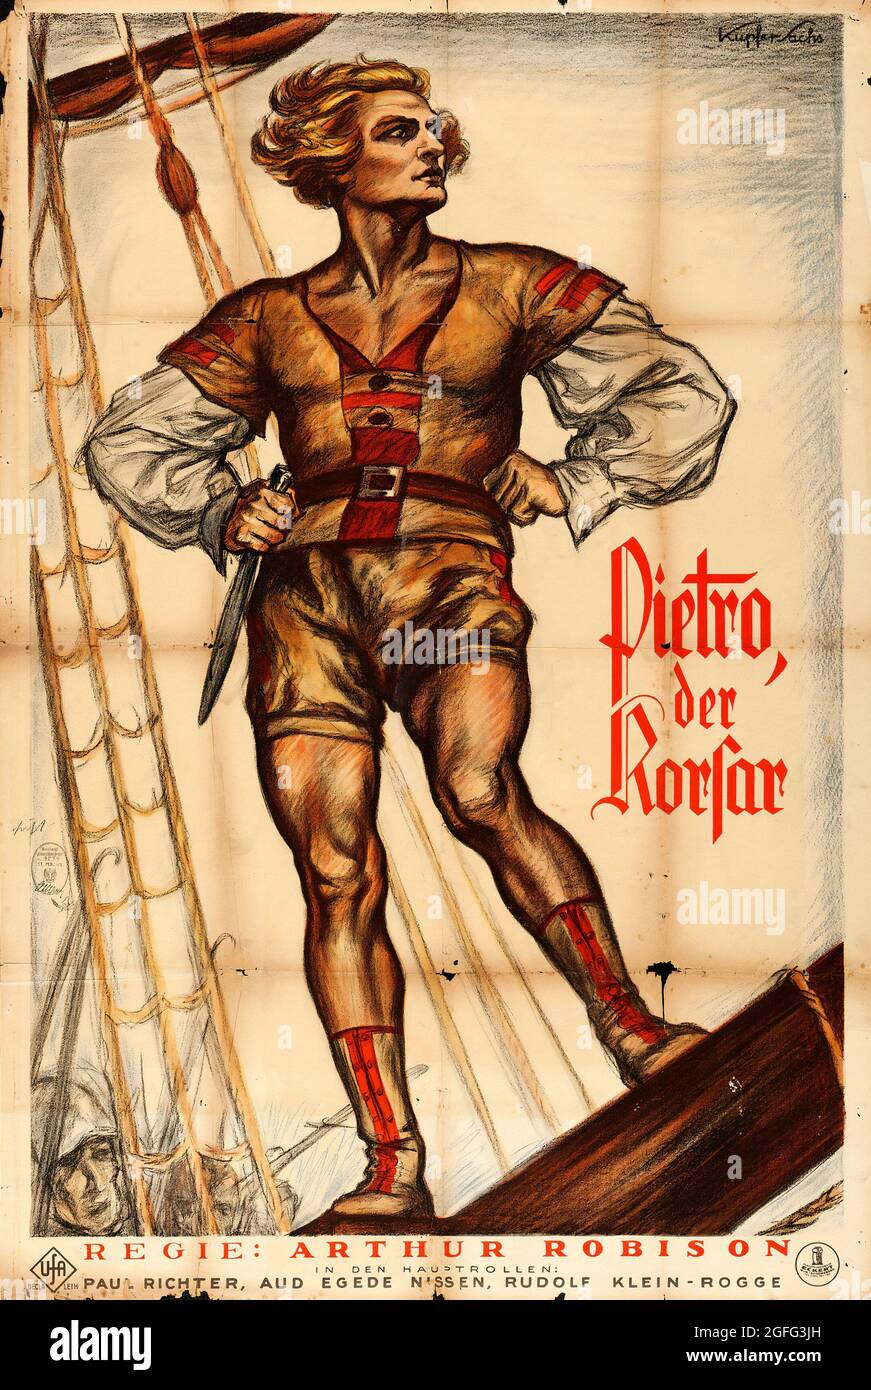 Pietro der Korsar – le Pirate d'amour (UFA, 1925). Poster de film allemand. Œuvres d'art Julius Kupfer-Sachs. Banque D'Images